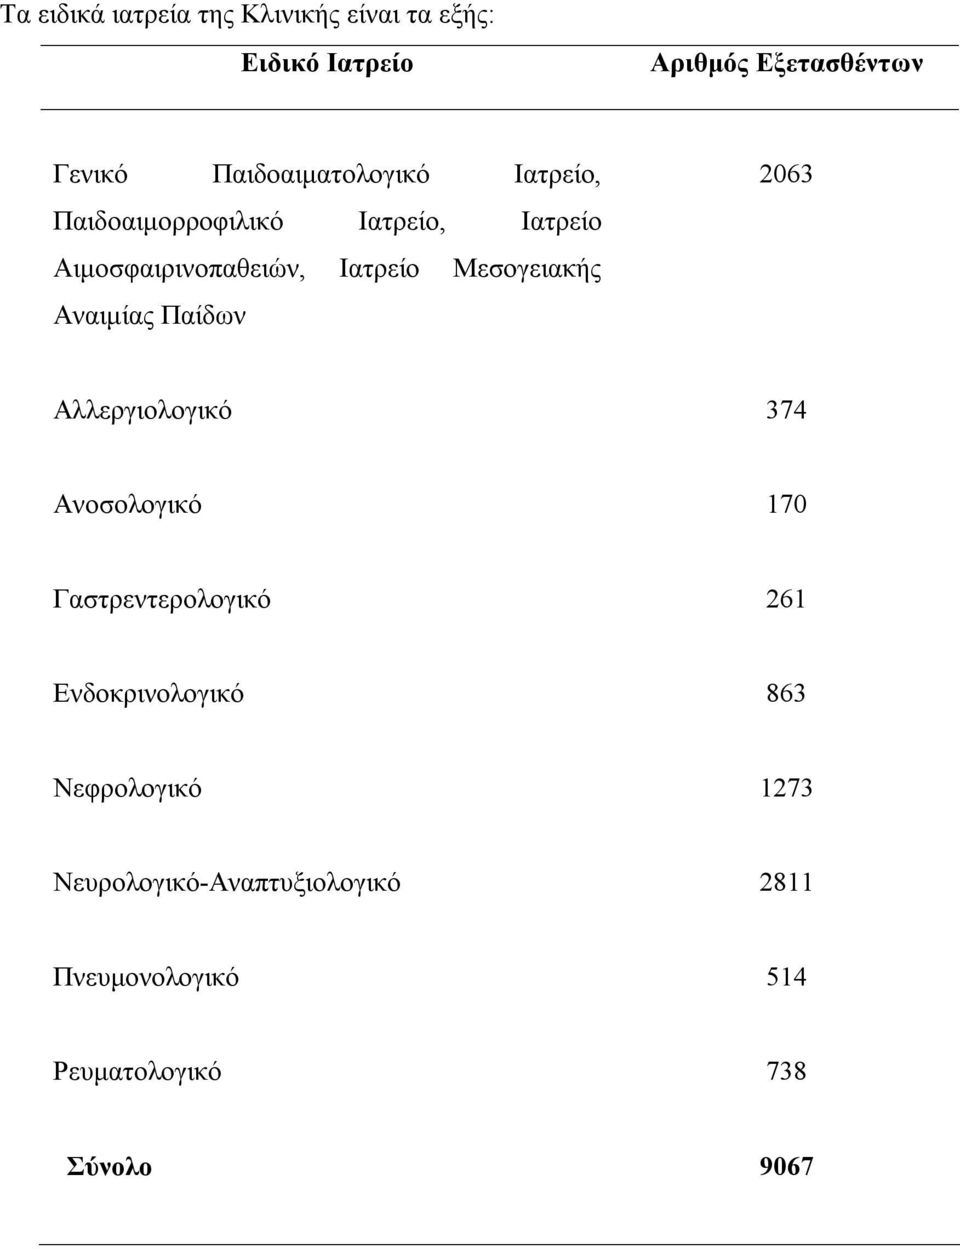 Μεσογειακής Αναιμίας Παίδων 2063 Αλλεργιολογικό 374 Ανοσολογικό 170 Γαστρεντερολογικό 261